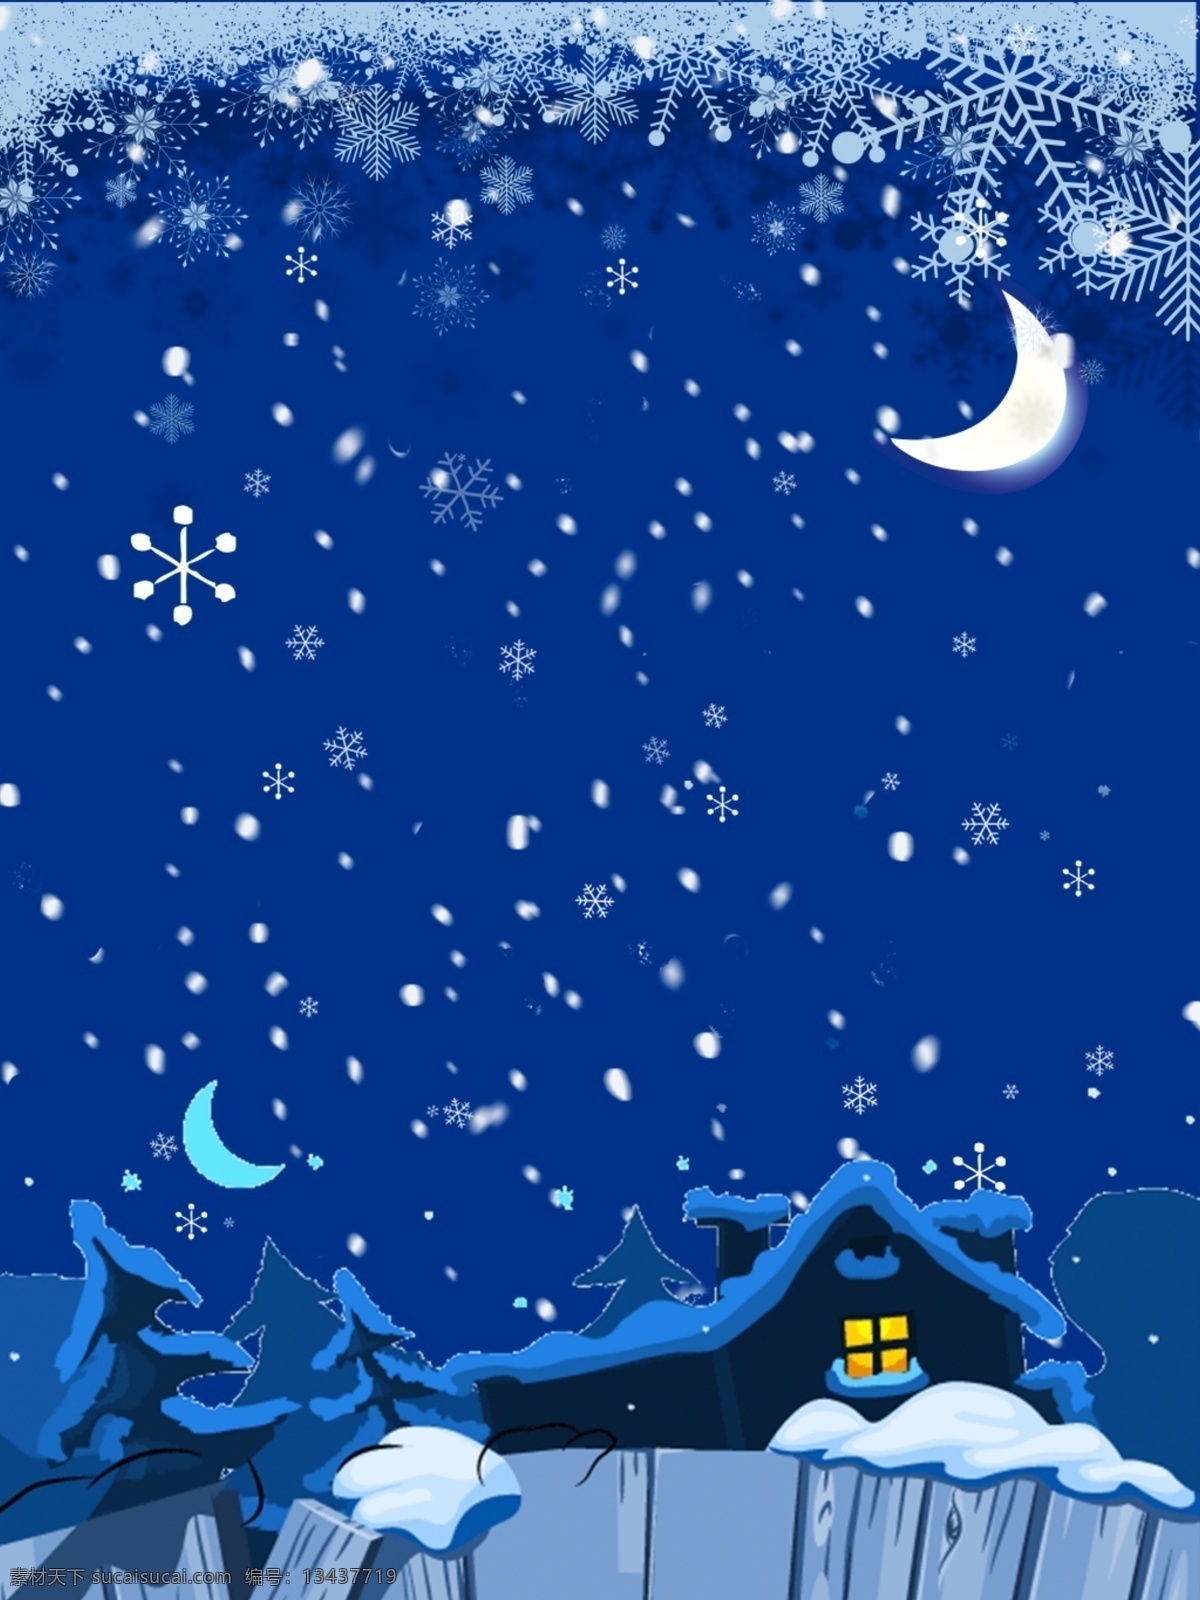 圣诞 夜晚 房屋 雪花 蓝色 背景 图 圣诞节 月亮 广告背景图